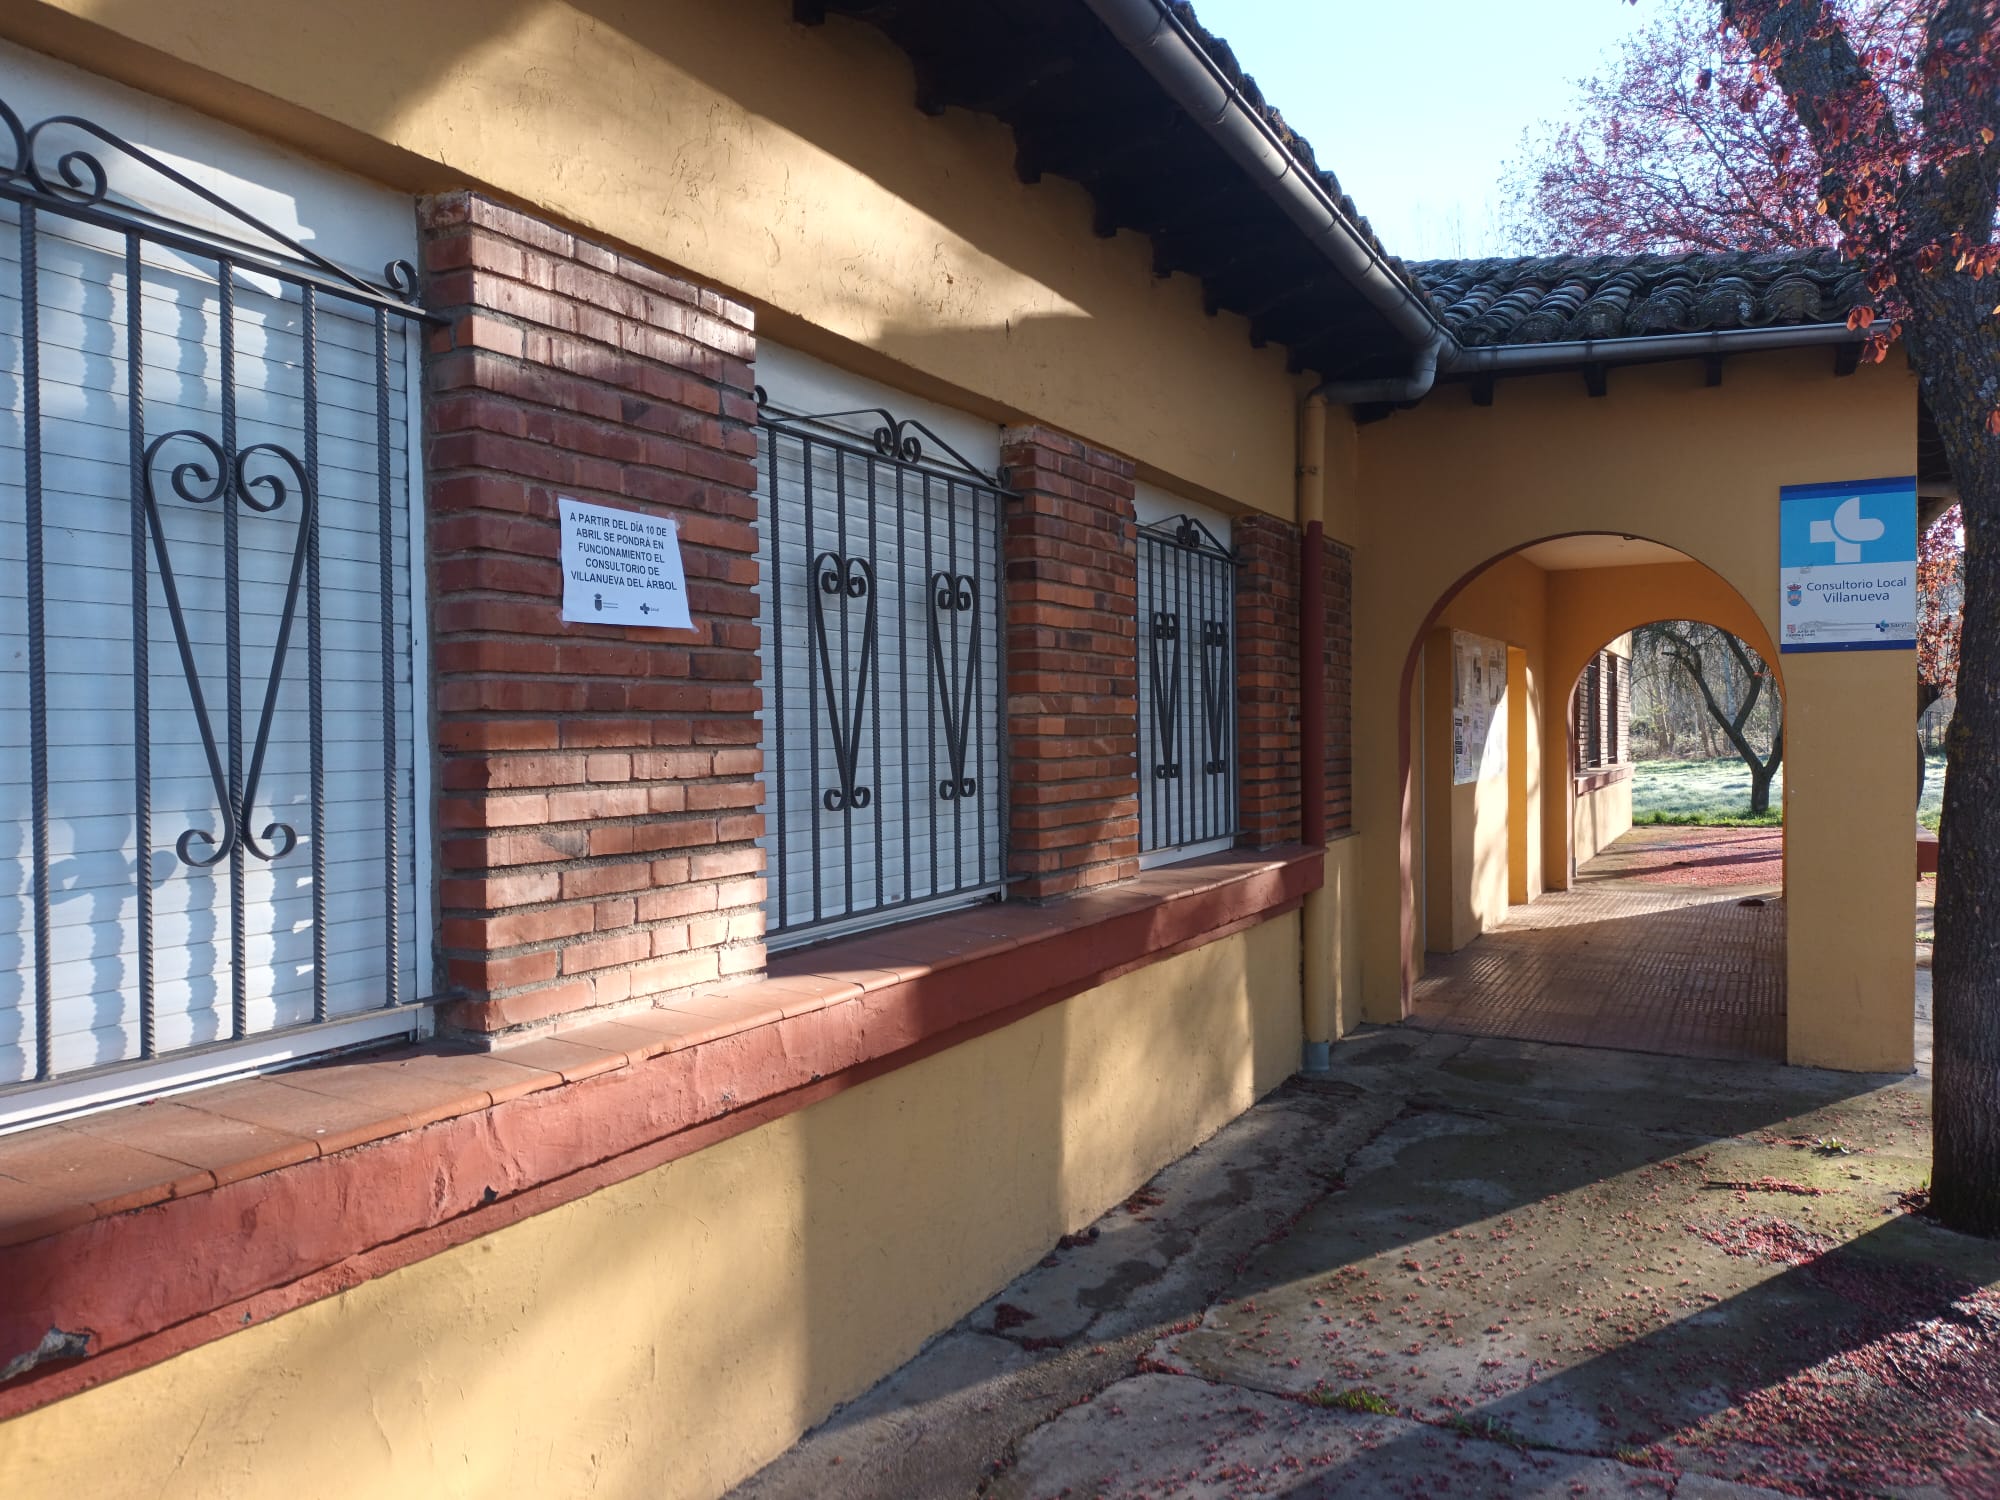 Consultorio médico de Villanueva del Árbol, municipio de Villaquilambre. | L.N.C.